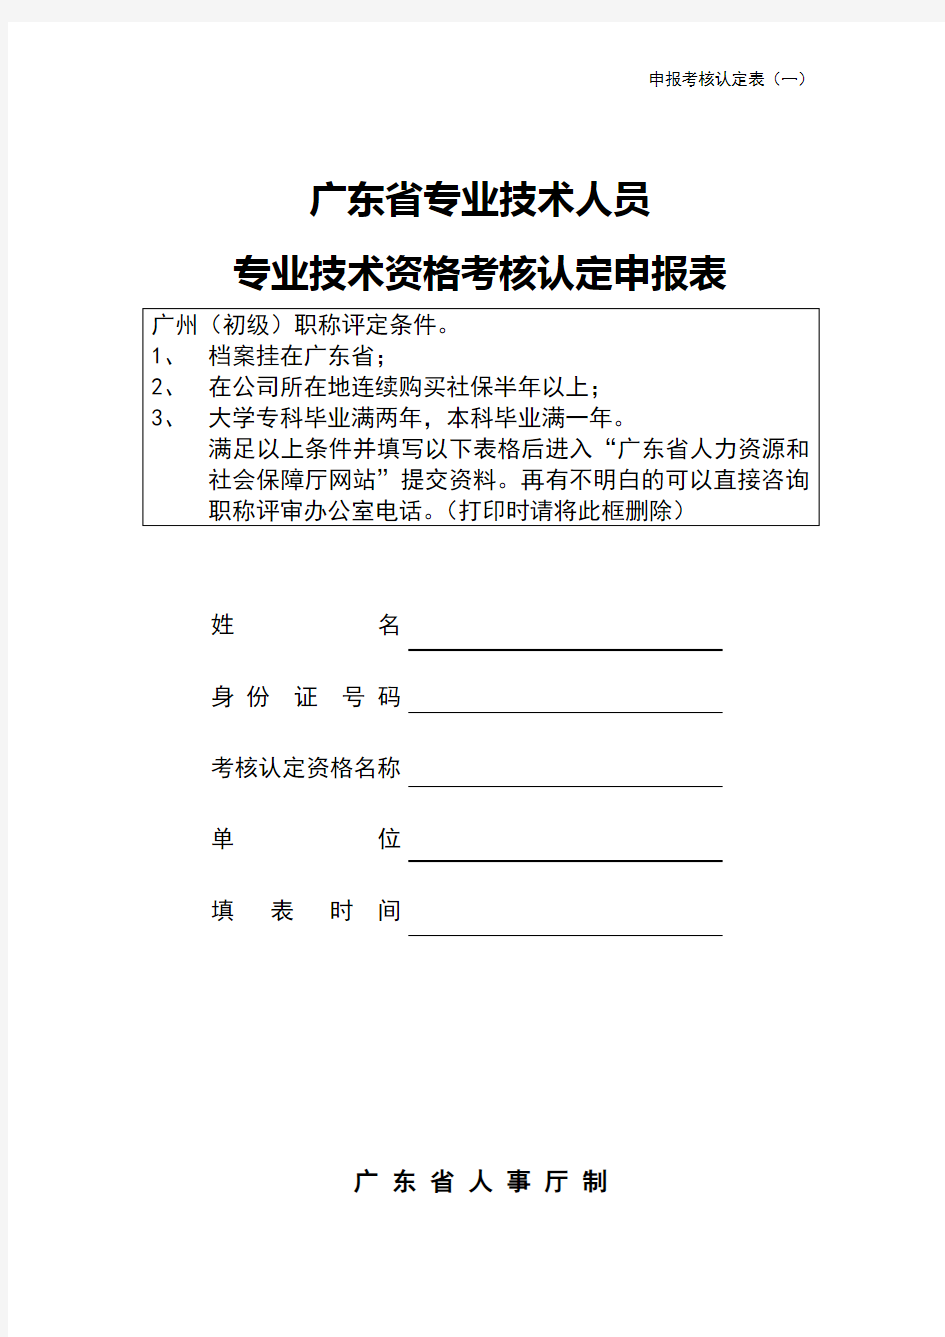 广东省初级职称评定条件及相关表格